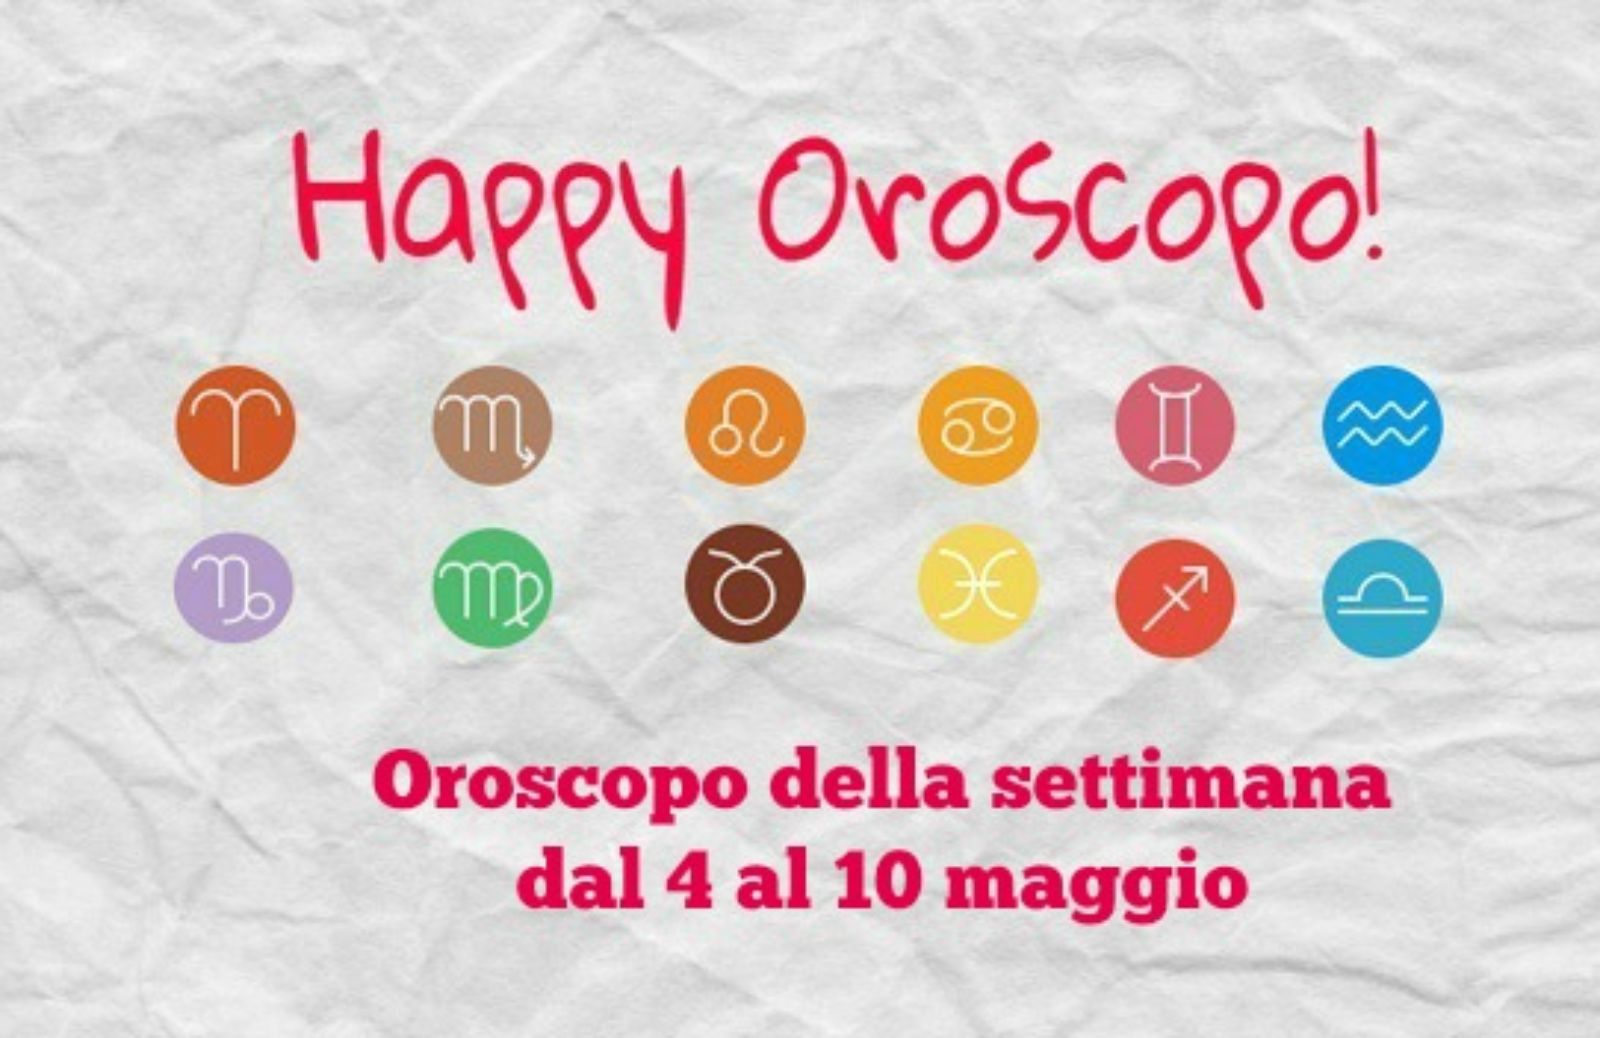 Happy Oroscopo della settimana: cosa dicono le stelle dal 4 al 10 maggio